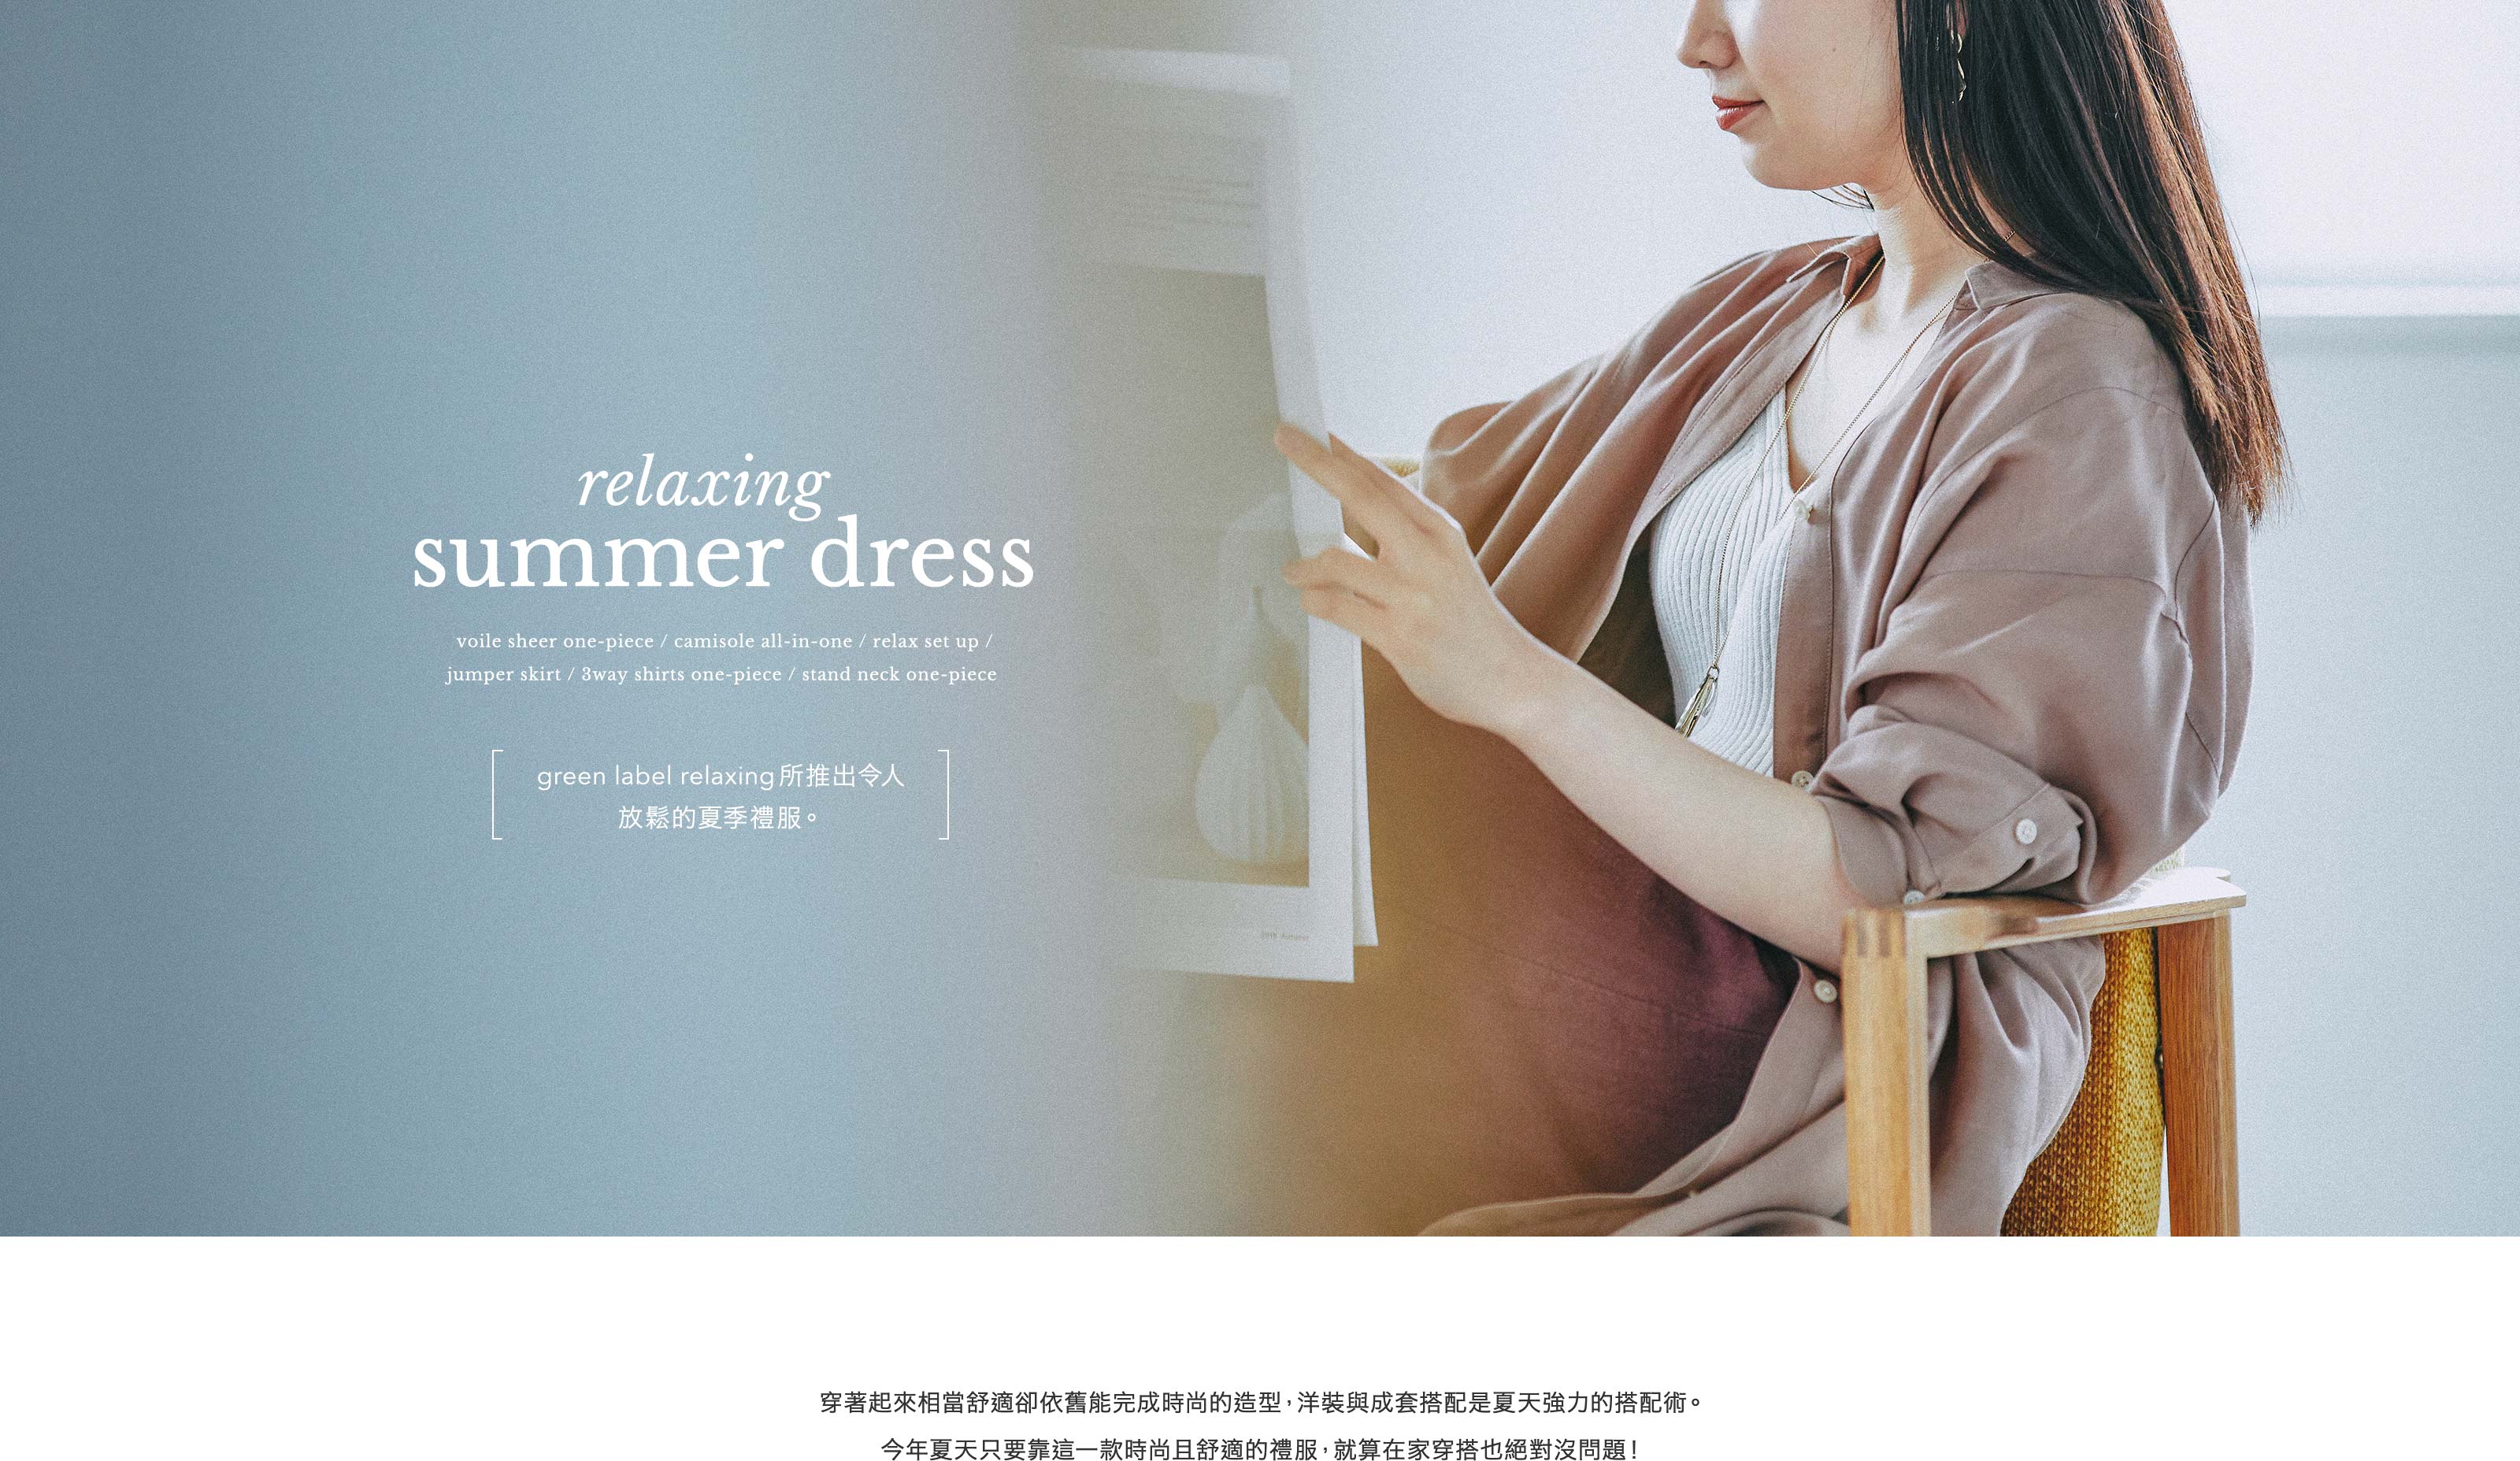 relaxing summer dress -green label relaxing所推出令人放鬆的夏季禮服-